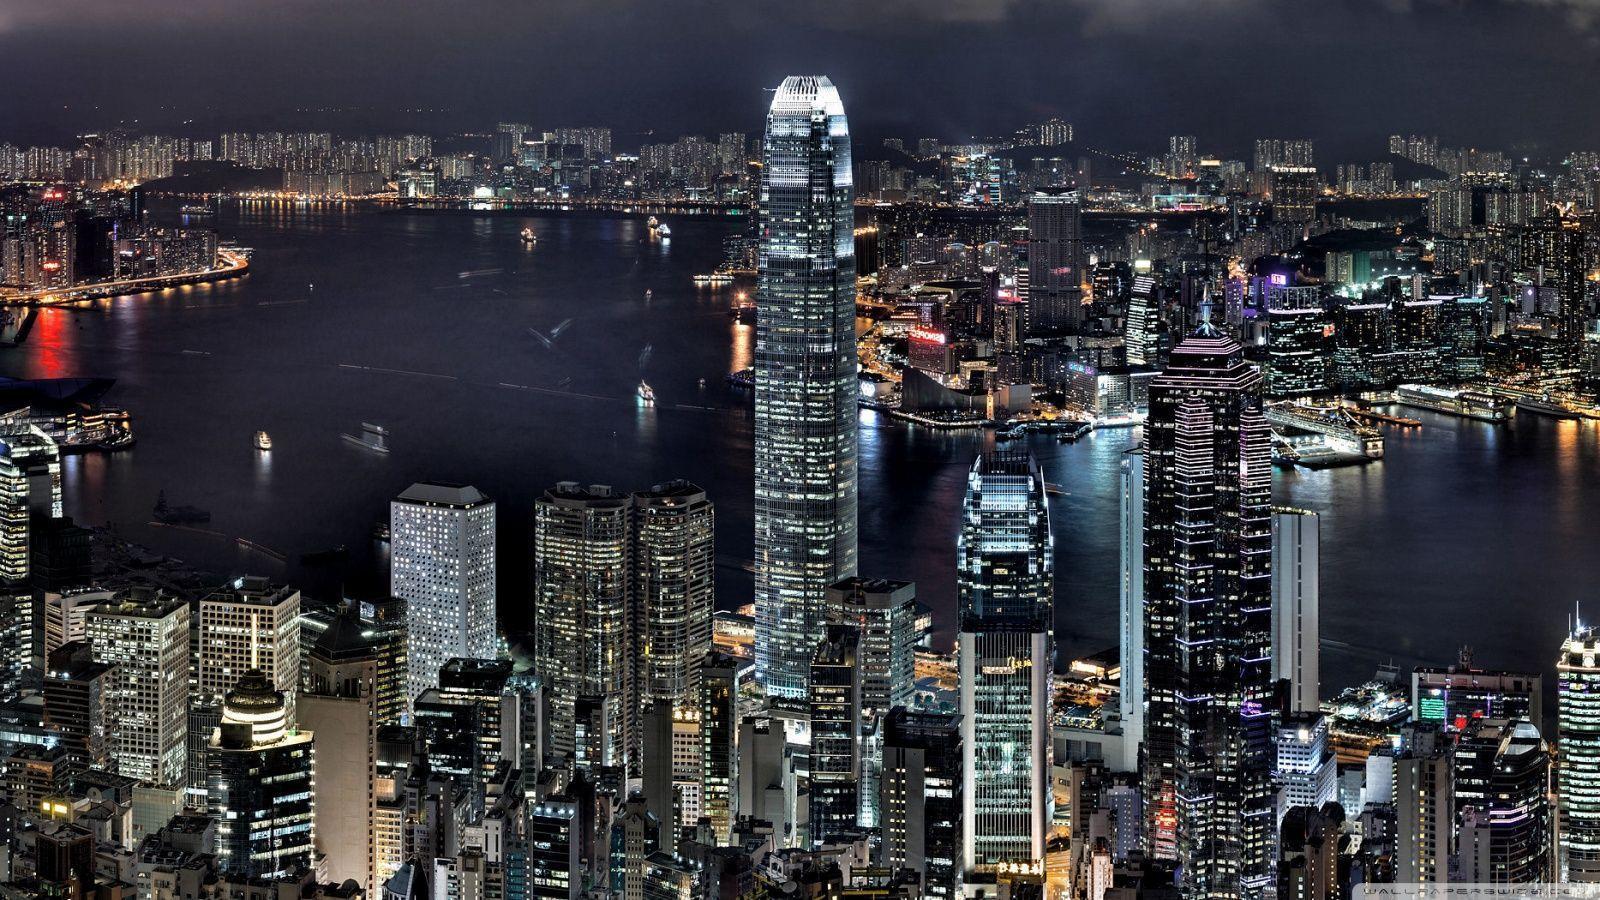 Hongkong At Night HD Wallpaper. Free HD Wallpaper